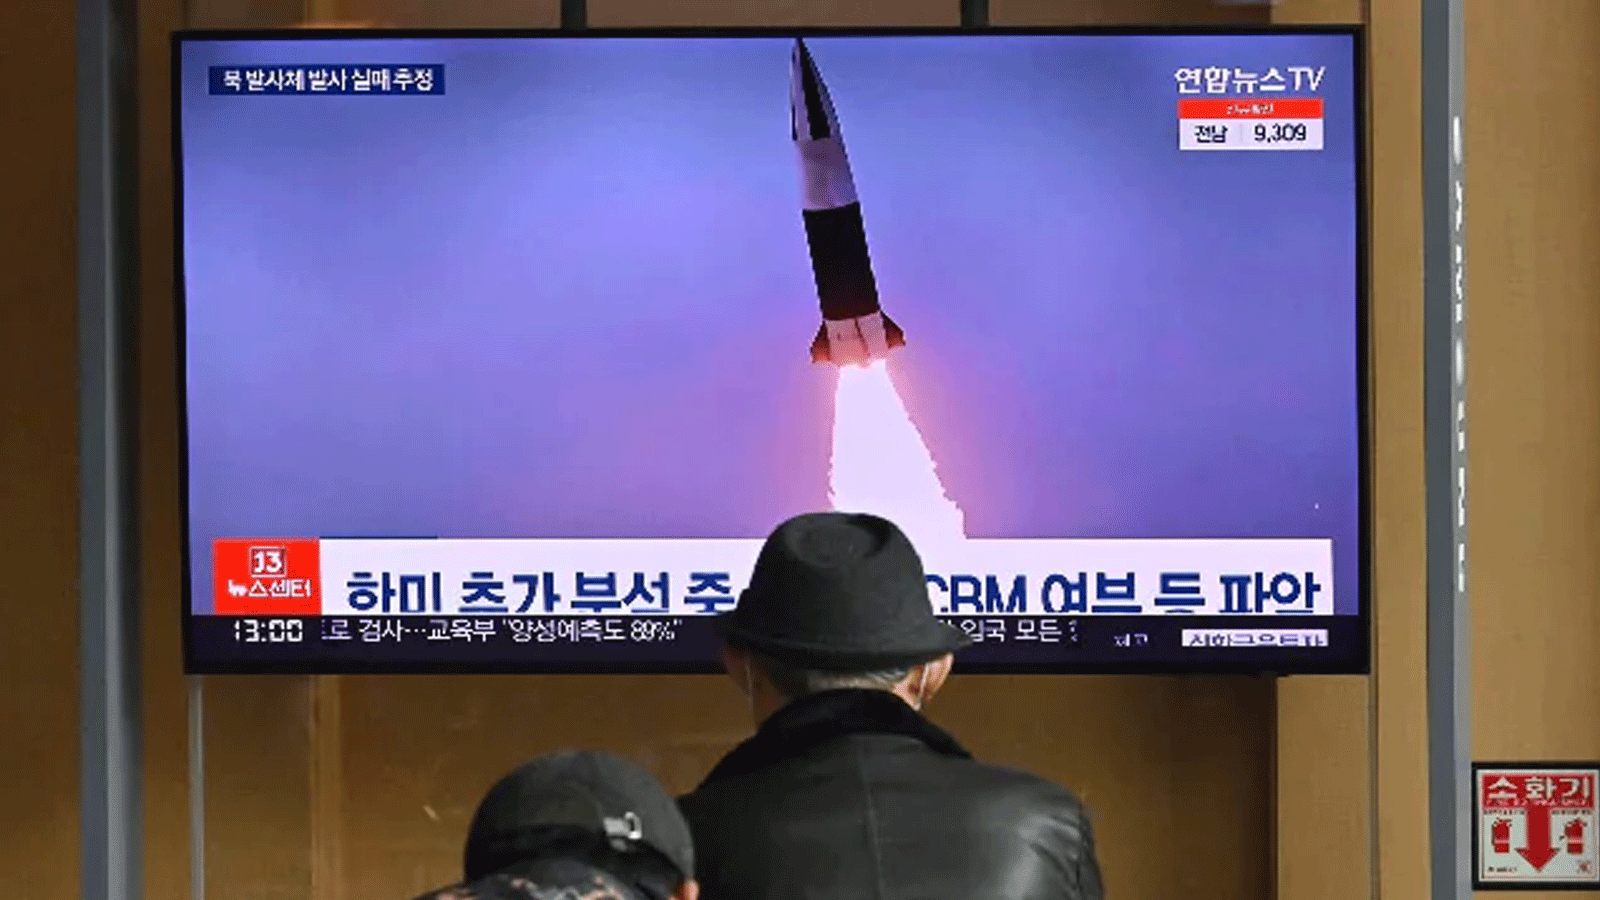 شاشة تعرض إطلاق صاروخ من كوريا الشمالية